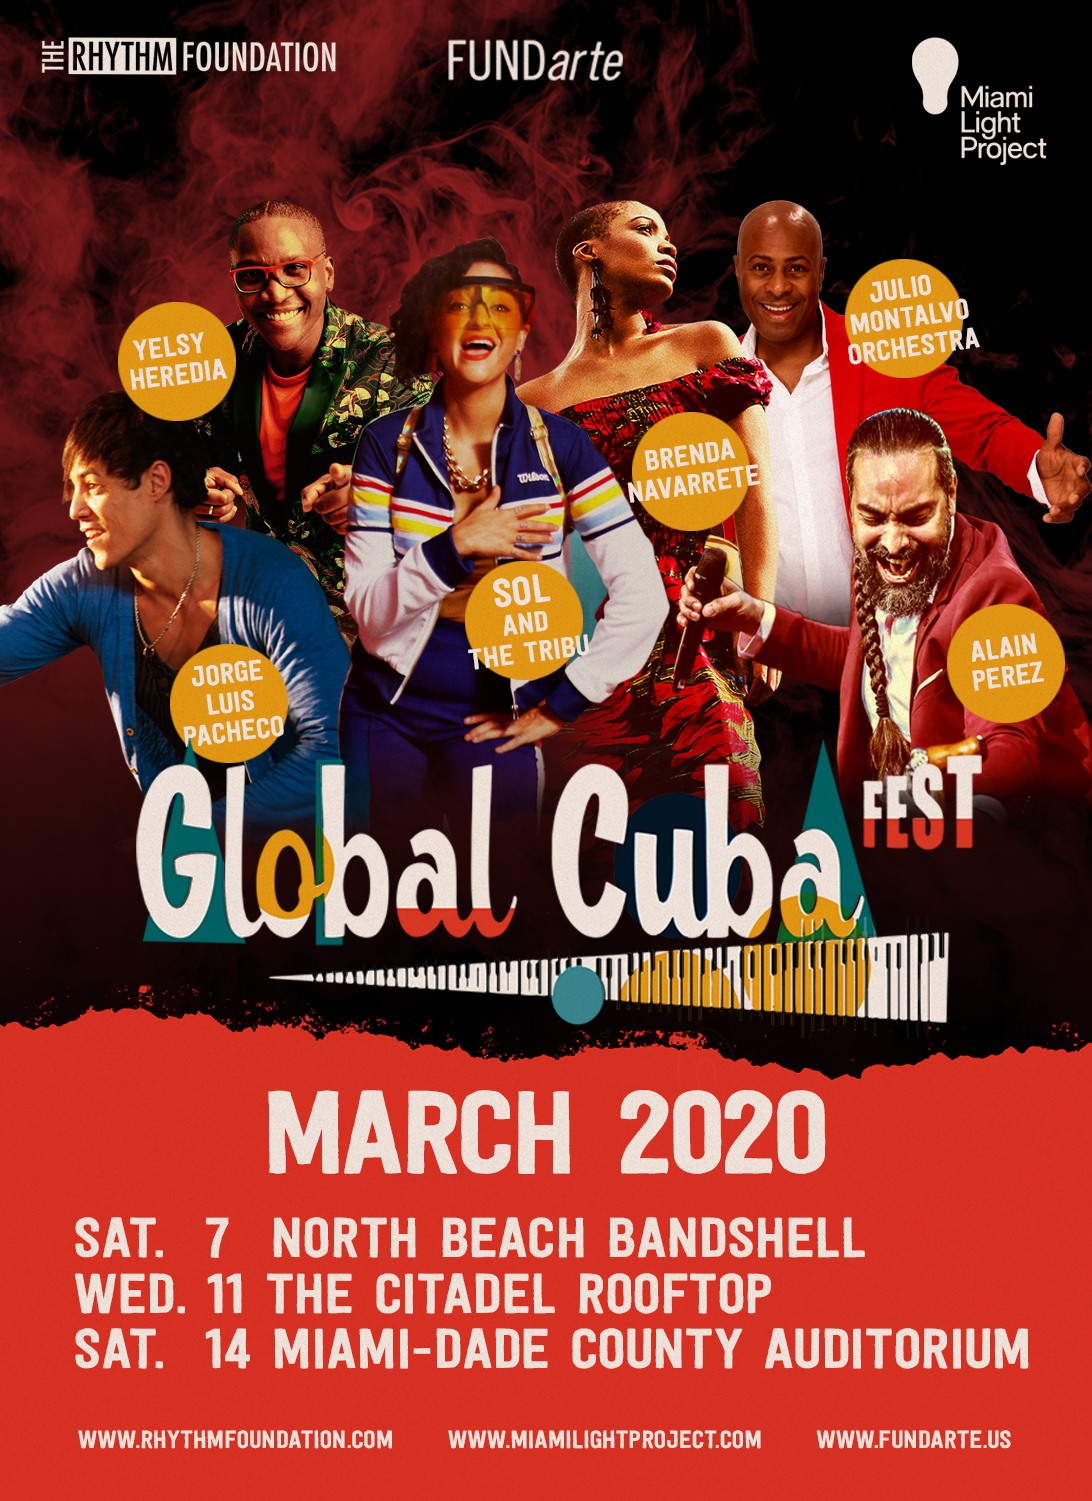 Anuncian Global Cuba Fest 2020 en Miami, con Brenda Navarrete y otros